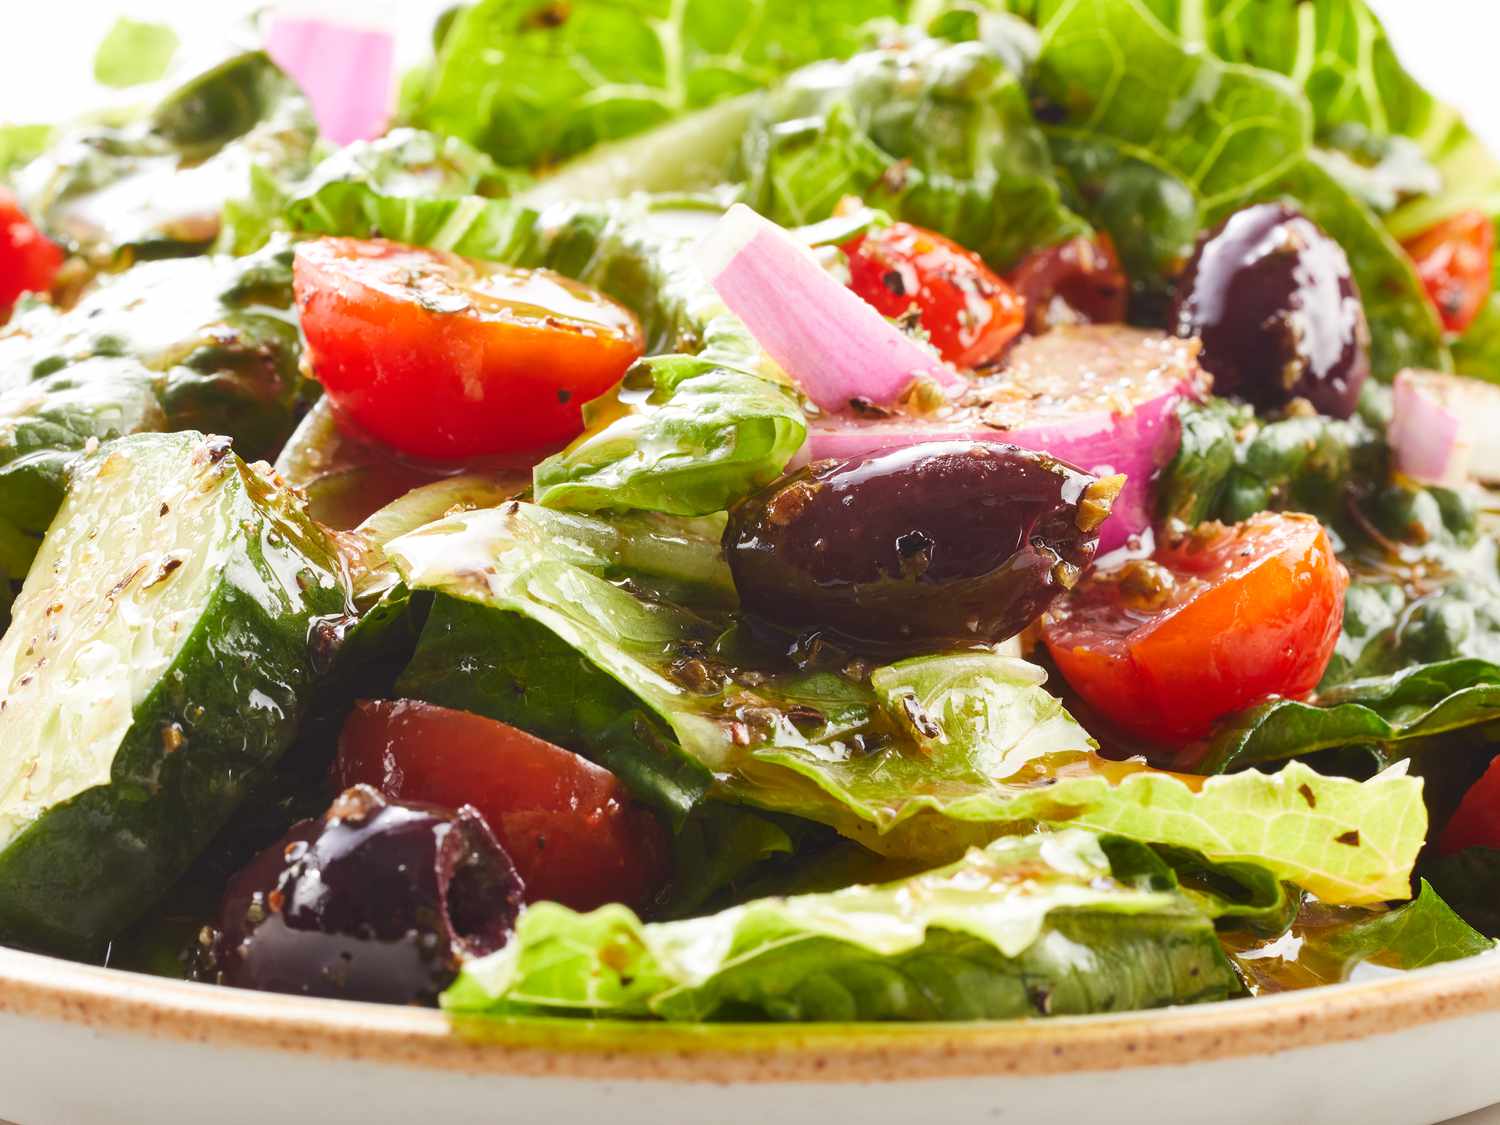 Nước sốt salad Hy Lạp hoàn toàn tuyệt vời